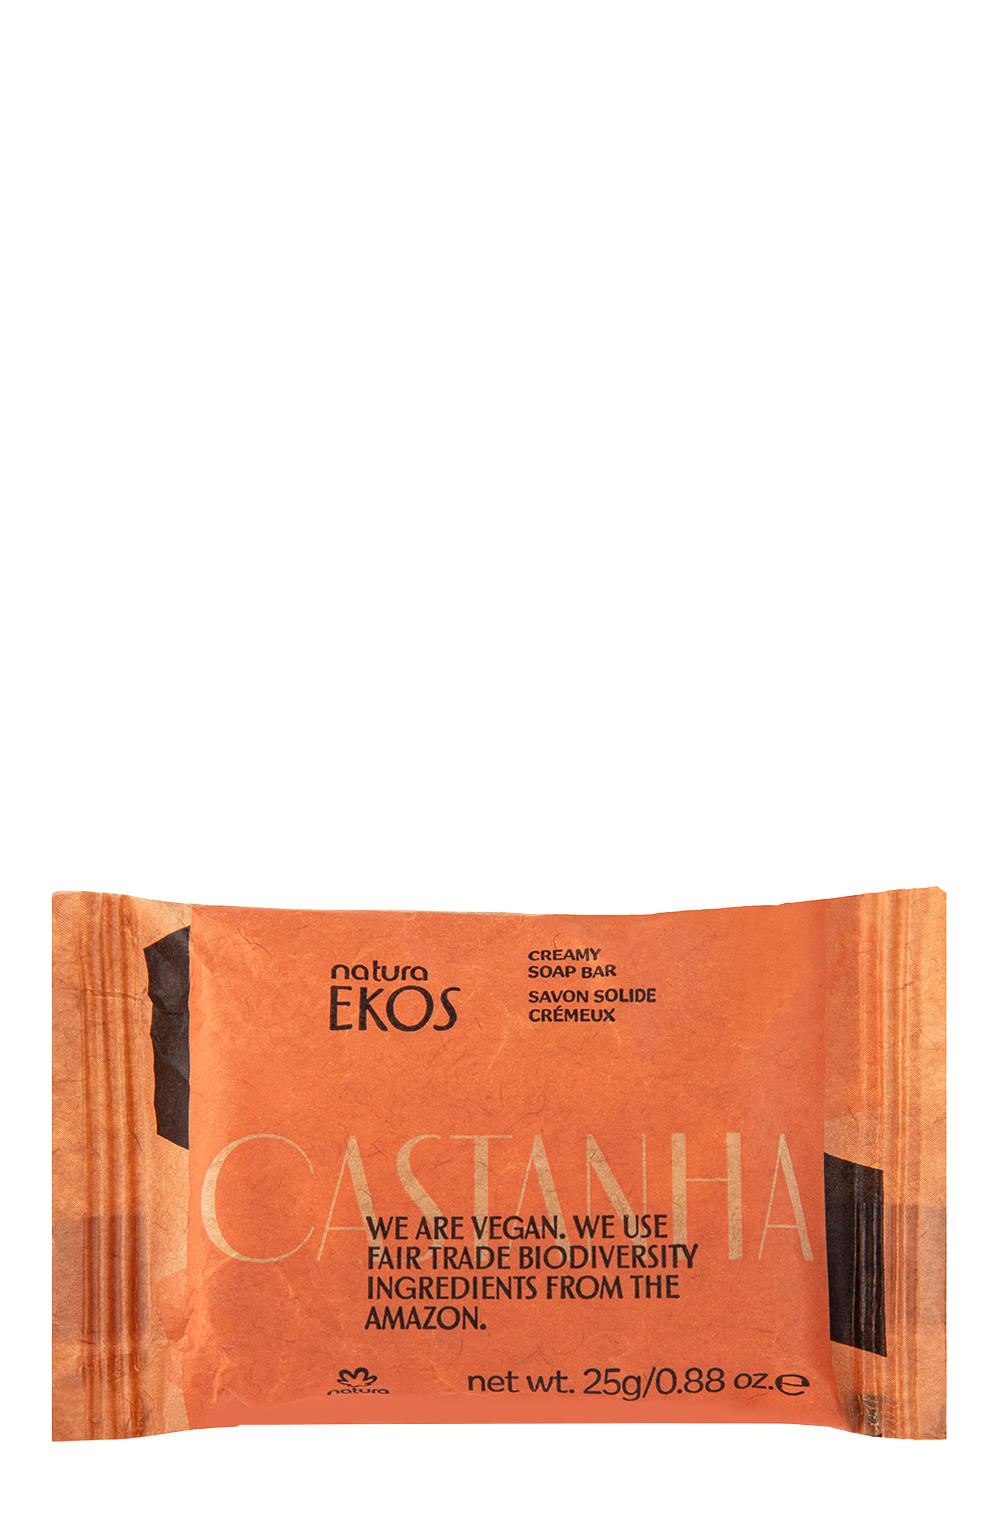 Castanha Creamy Exfoliating Soap Deluxe Sample 25g